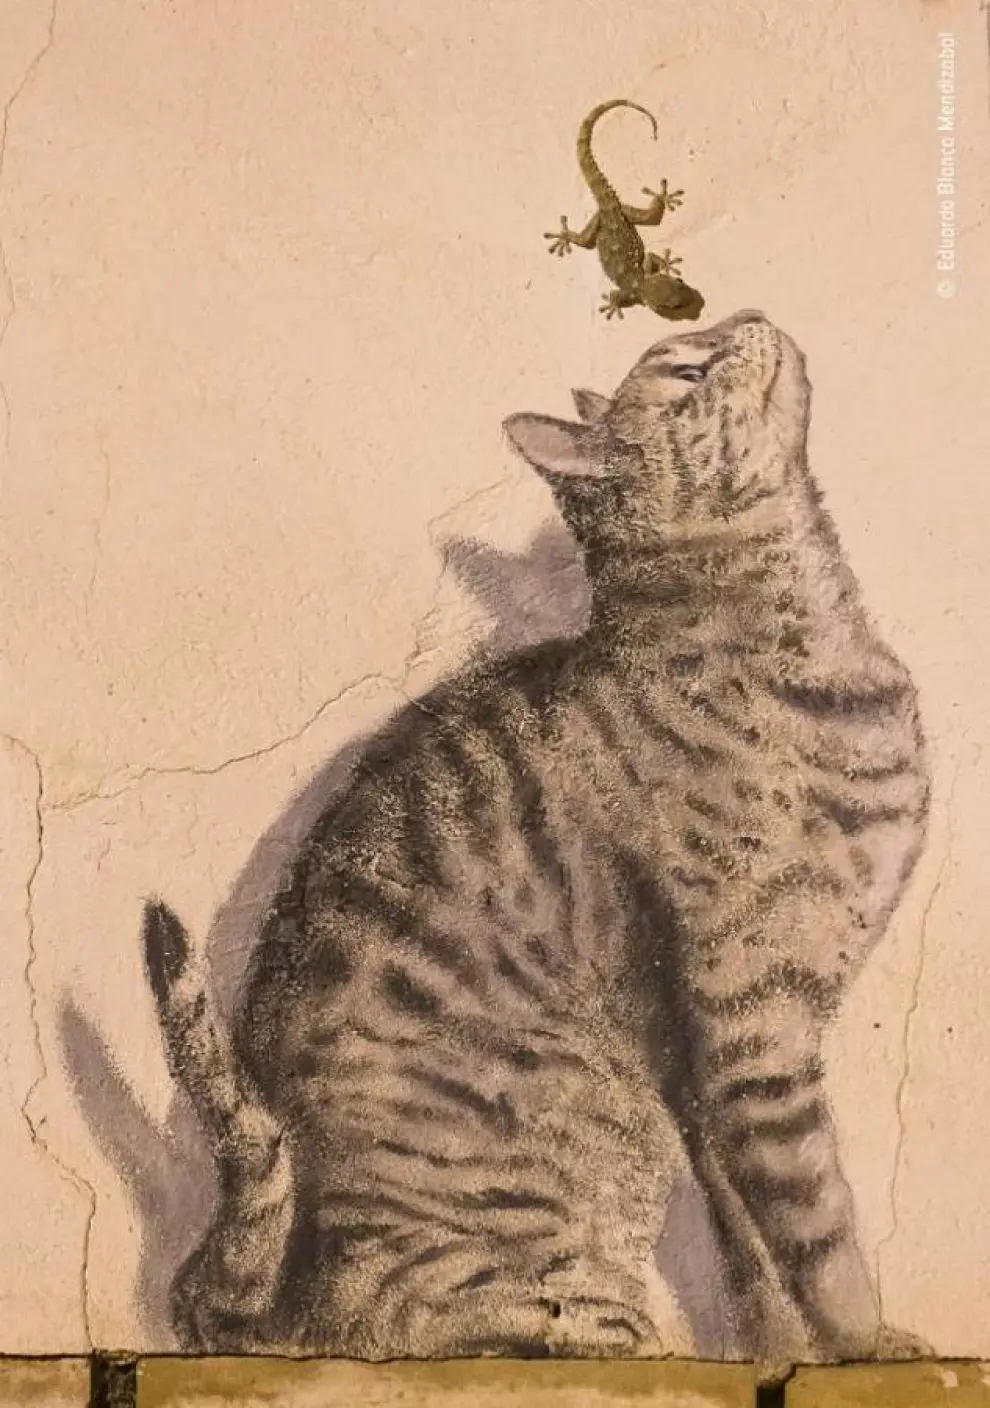 Titulada 'Vida y arte', esta imagen muestra una pared en la que aparece un grafitti de un gato con su sombra junto con una salamanquesa observando la pintura. La imagen fue tomada en Corella, Navarra.